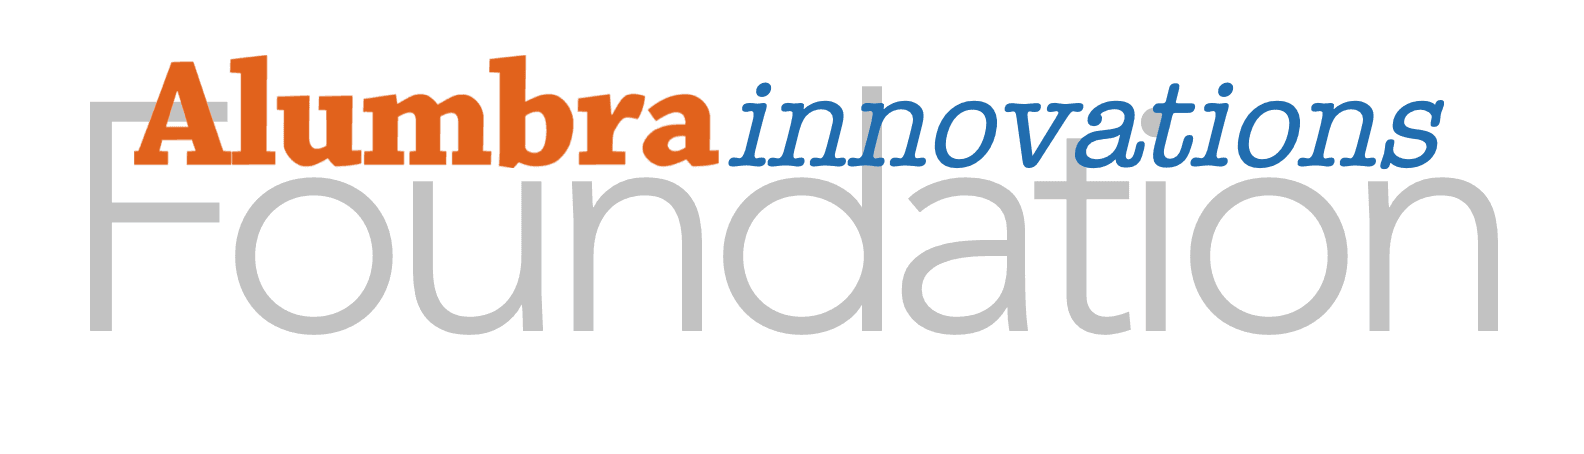 Alumbra Innovations Foundation